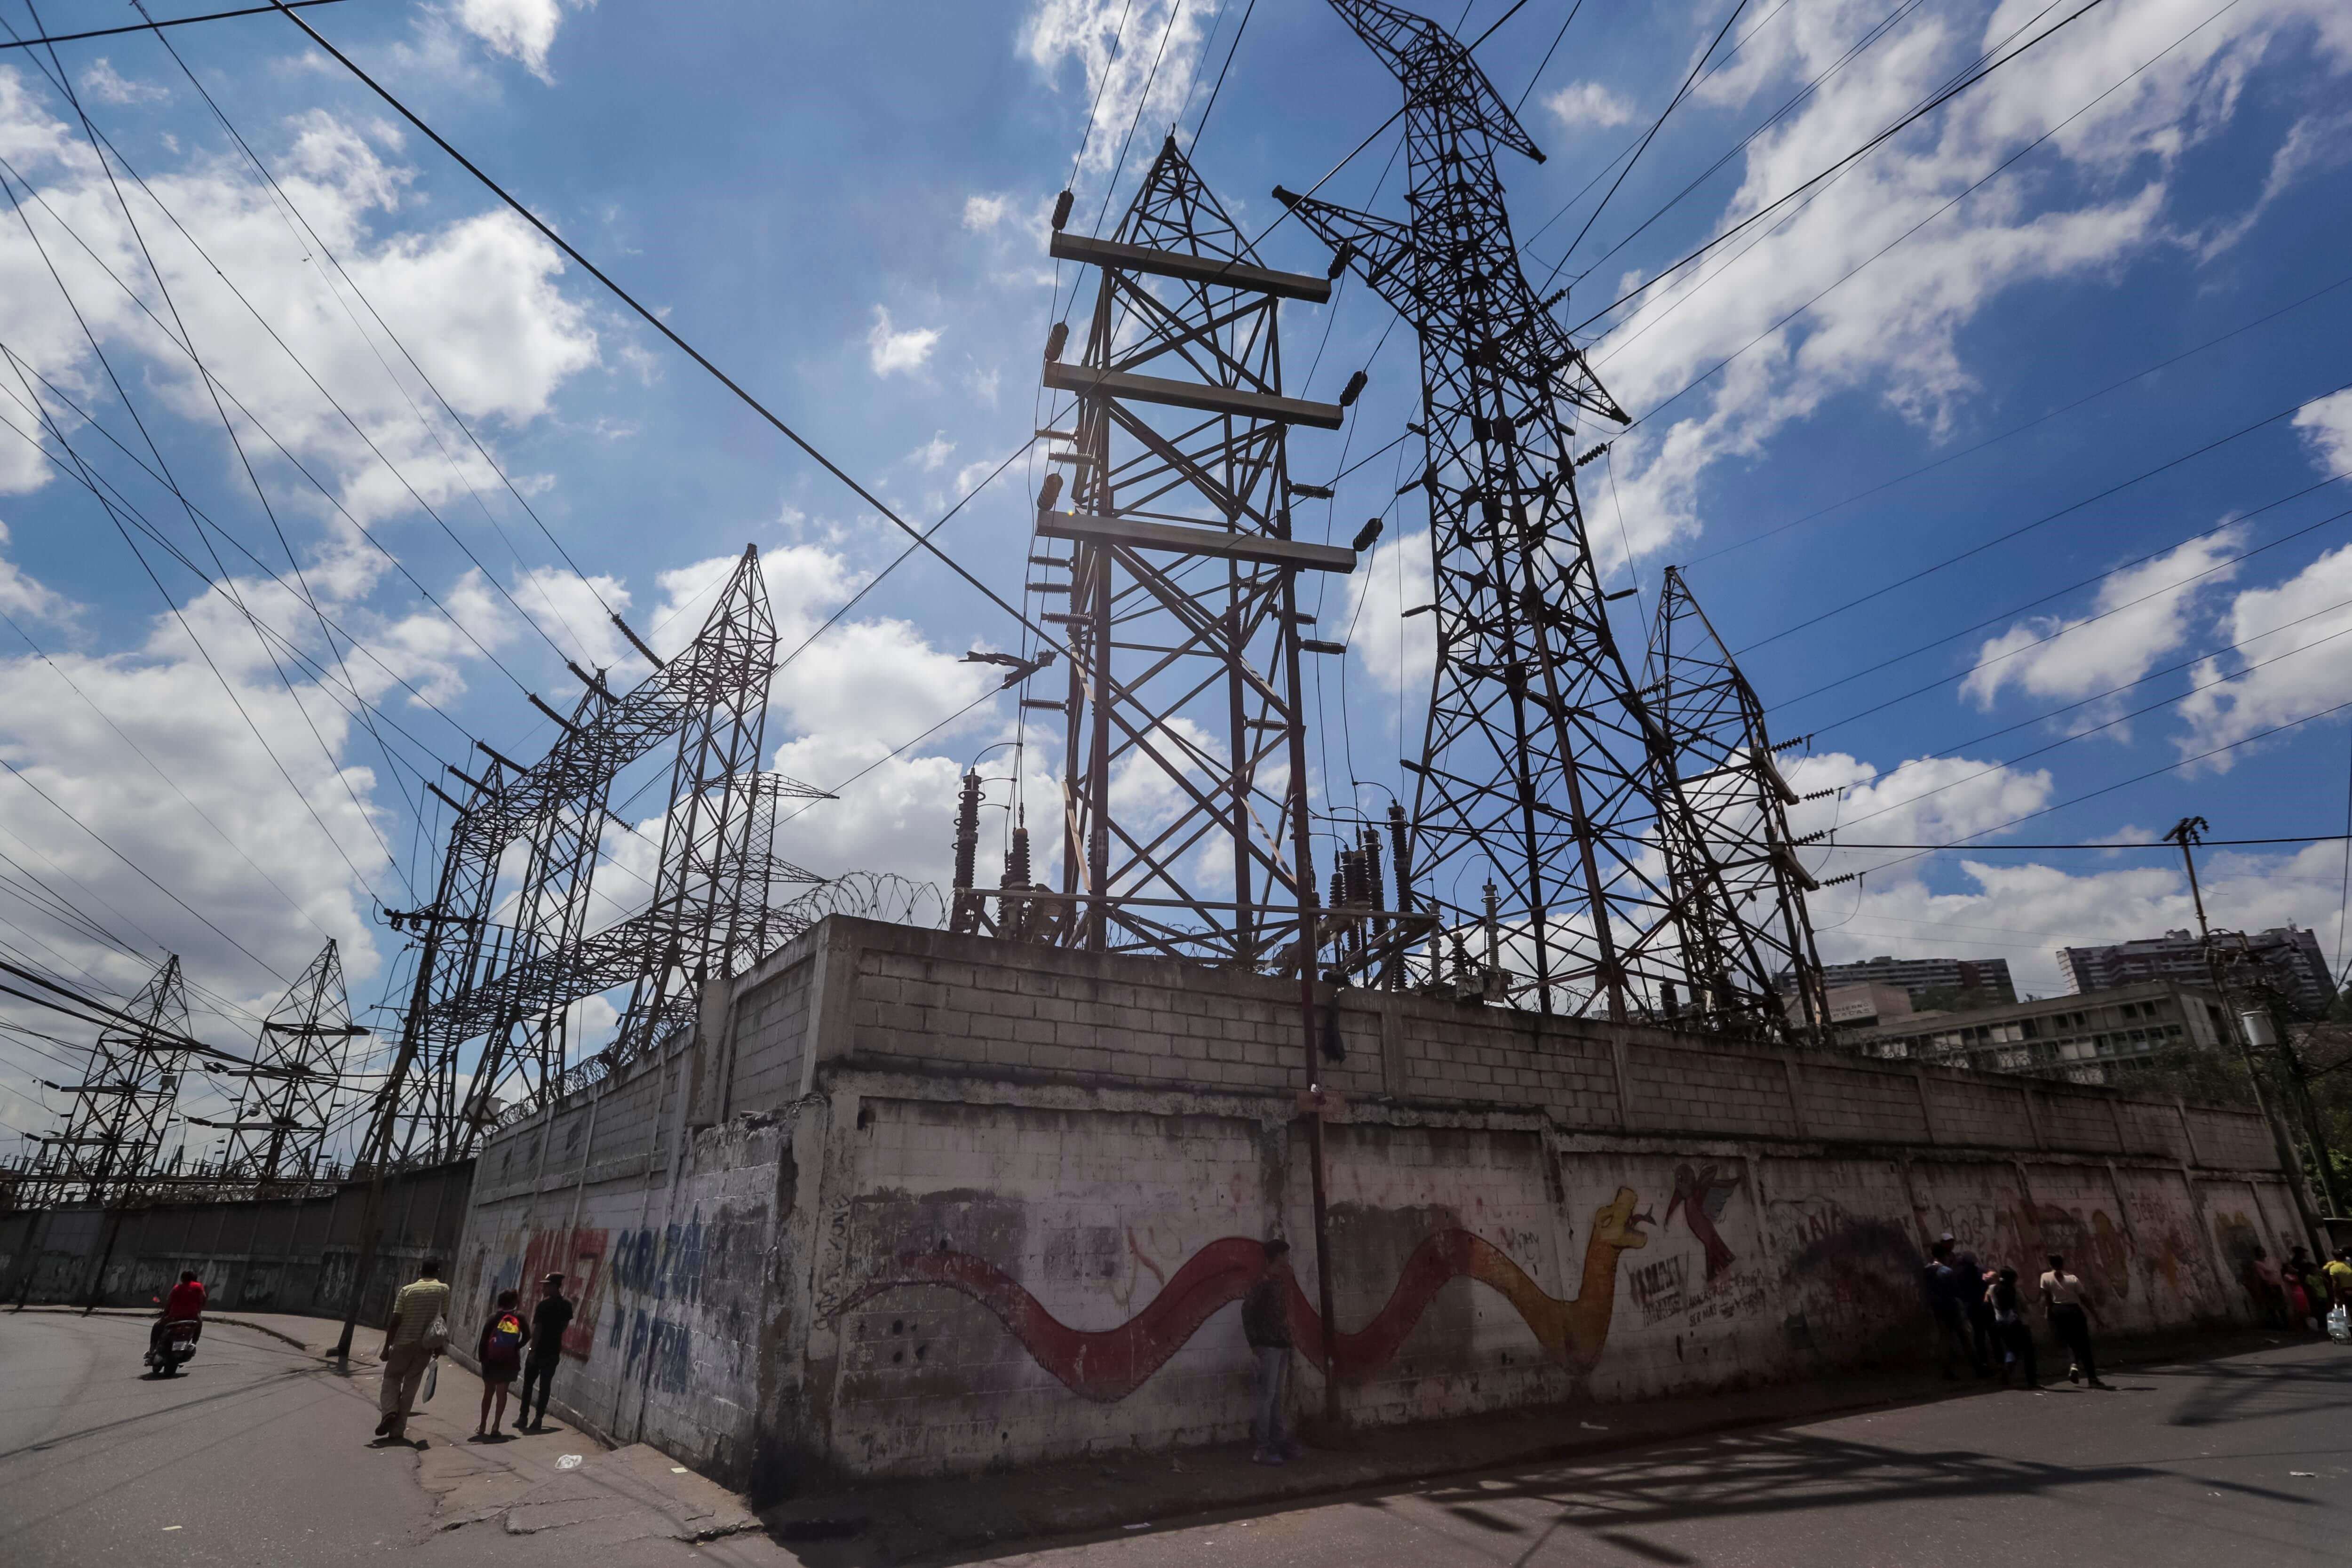 Gobierno venezolano anuncia modernización del sistema eléctrico tras apagones